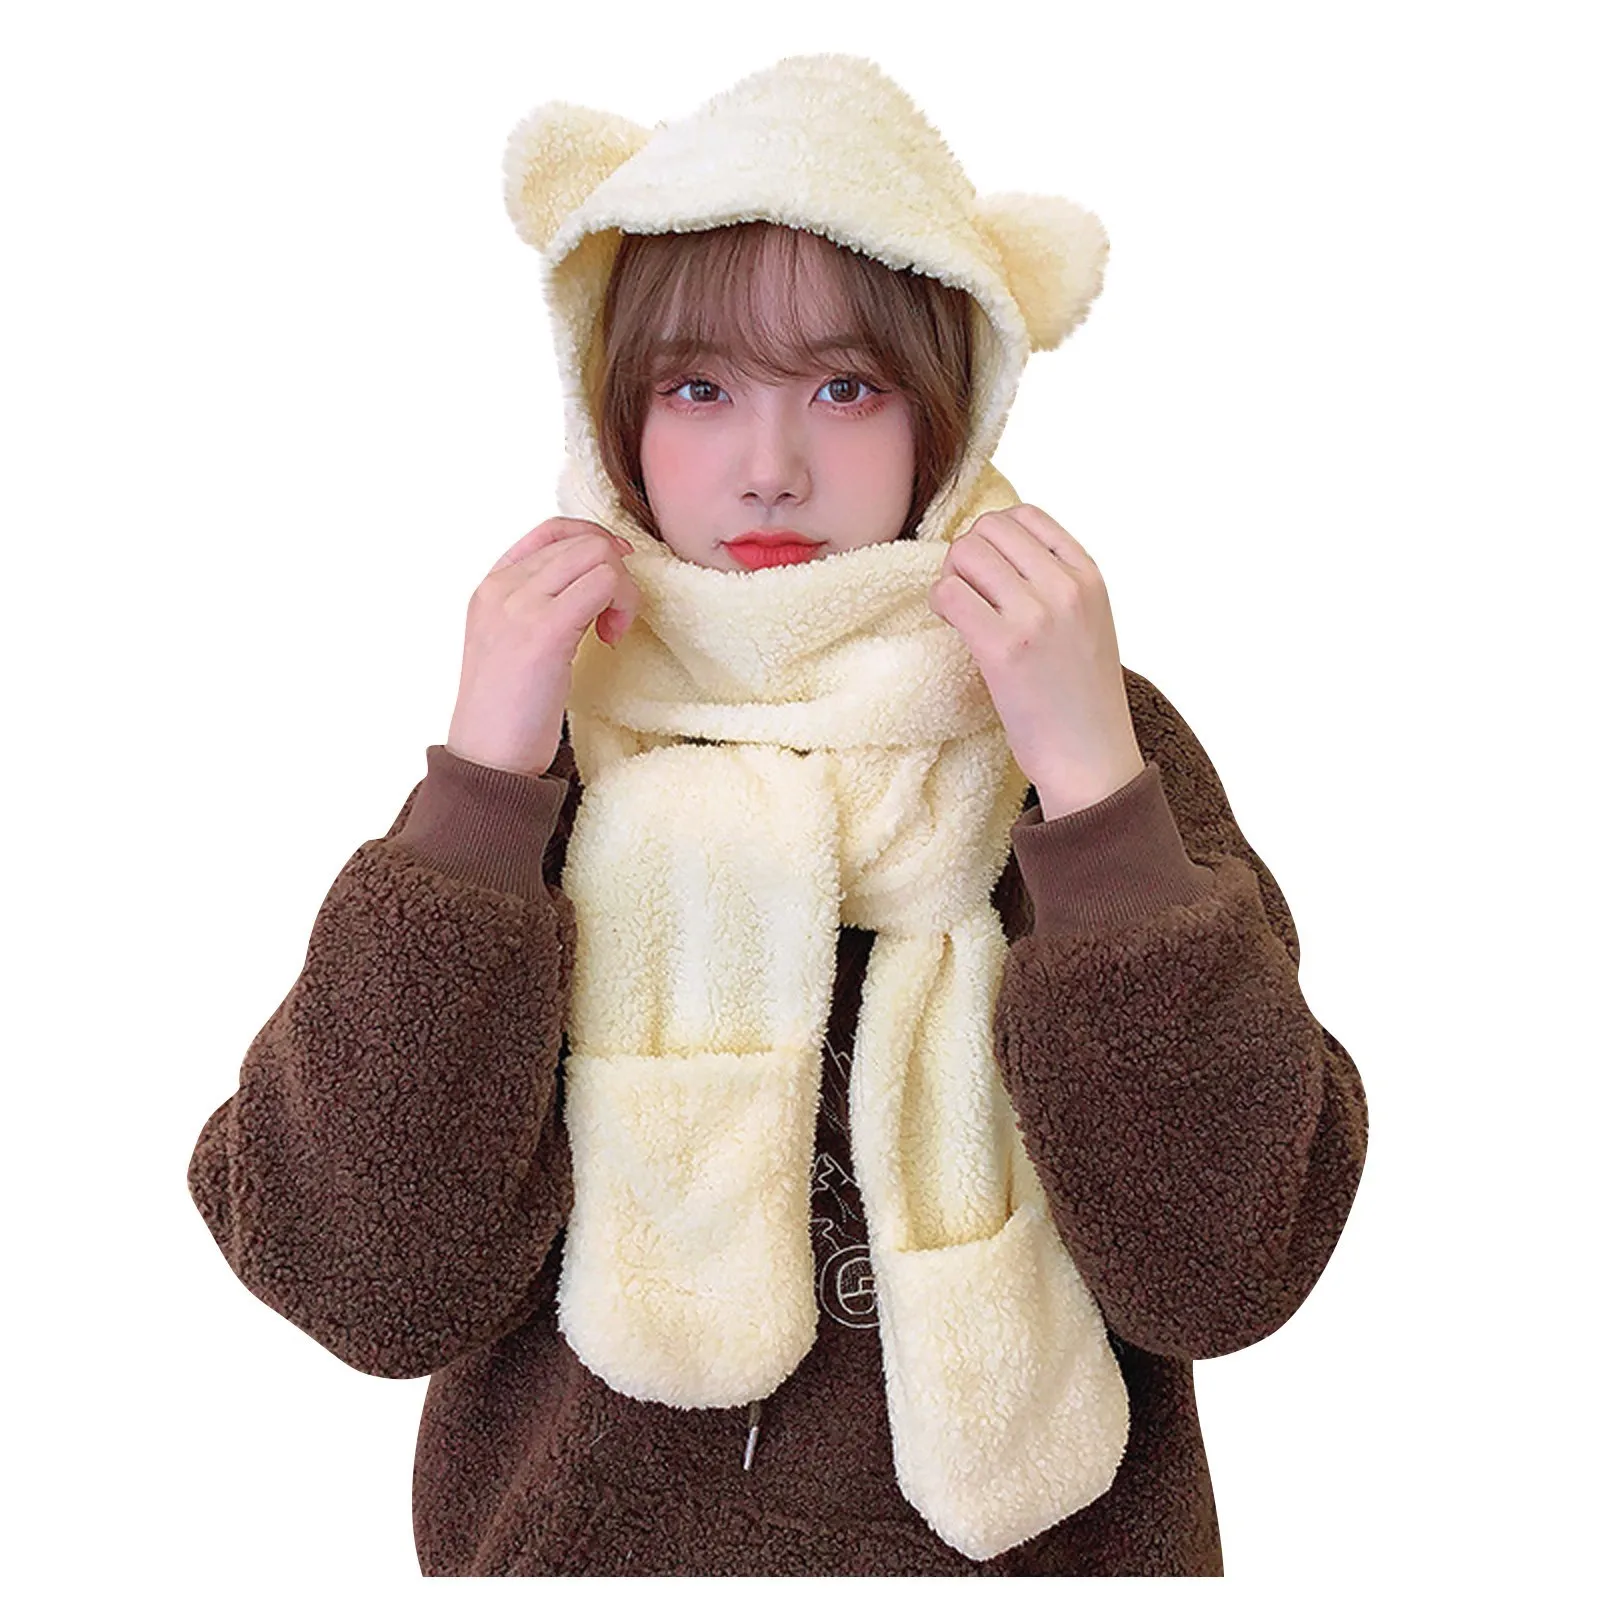 Winter Lamb Wool 3-In-1 Cute Bear Ear Hat Scarf Gloves Set Women Caps Warm Casual Plush Neck Hats Casual Fleece Girls Beanies